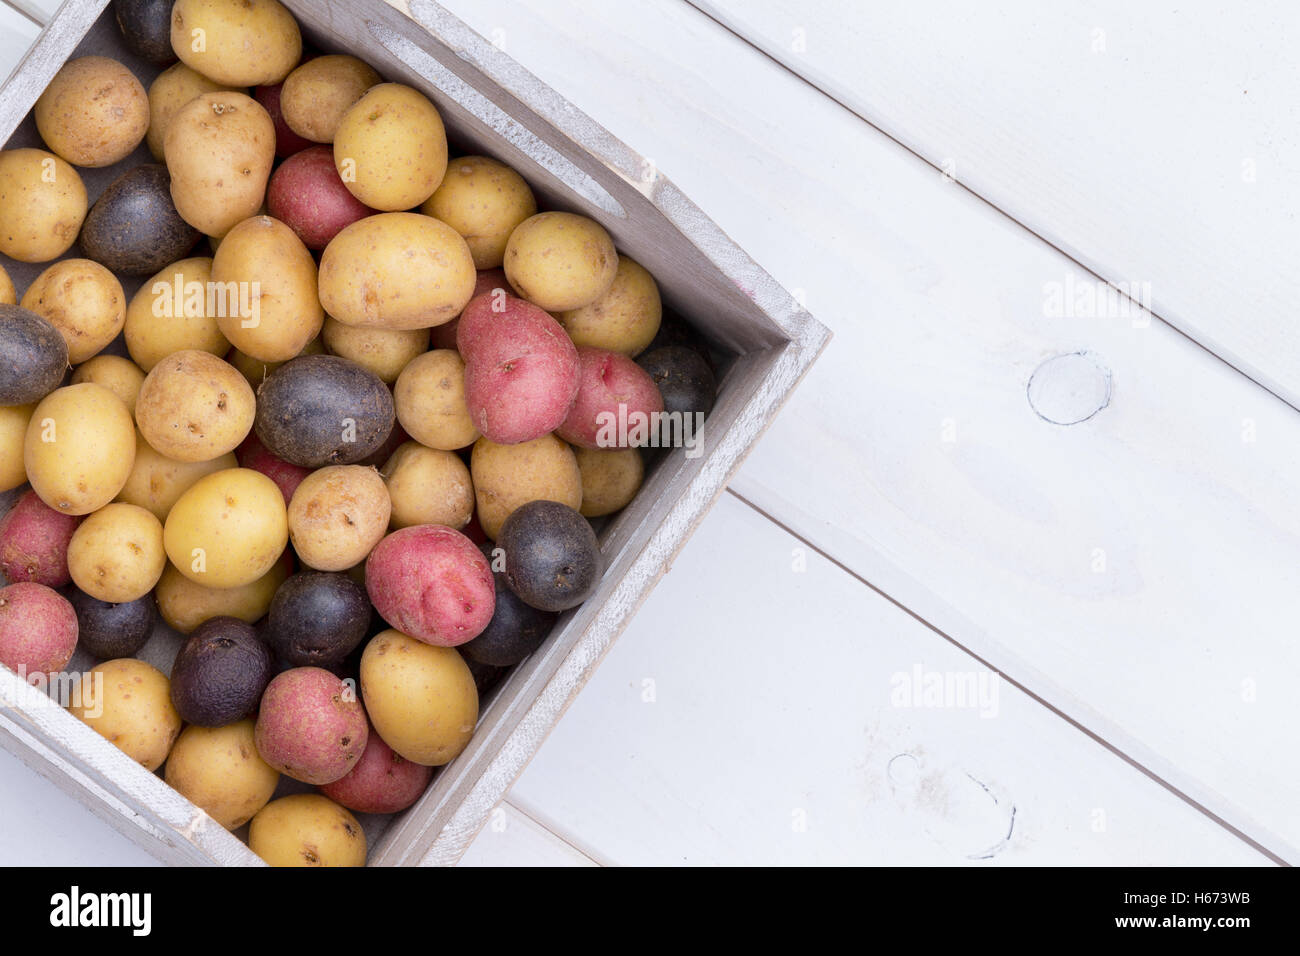 Holzkiste gefüllt mit bunten frischen rohen Babykartoffeln am Bauernmarkt auf einem weißen Holztisch von oben gesehen Stockfoto